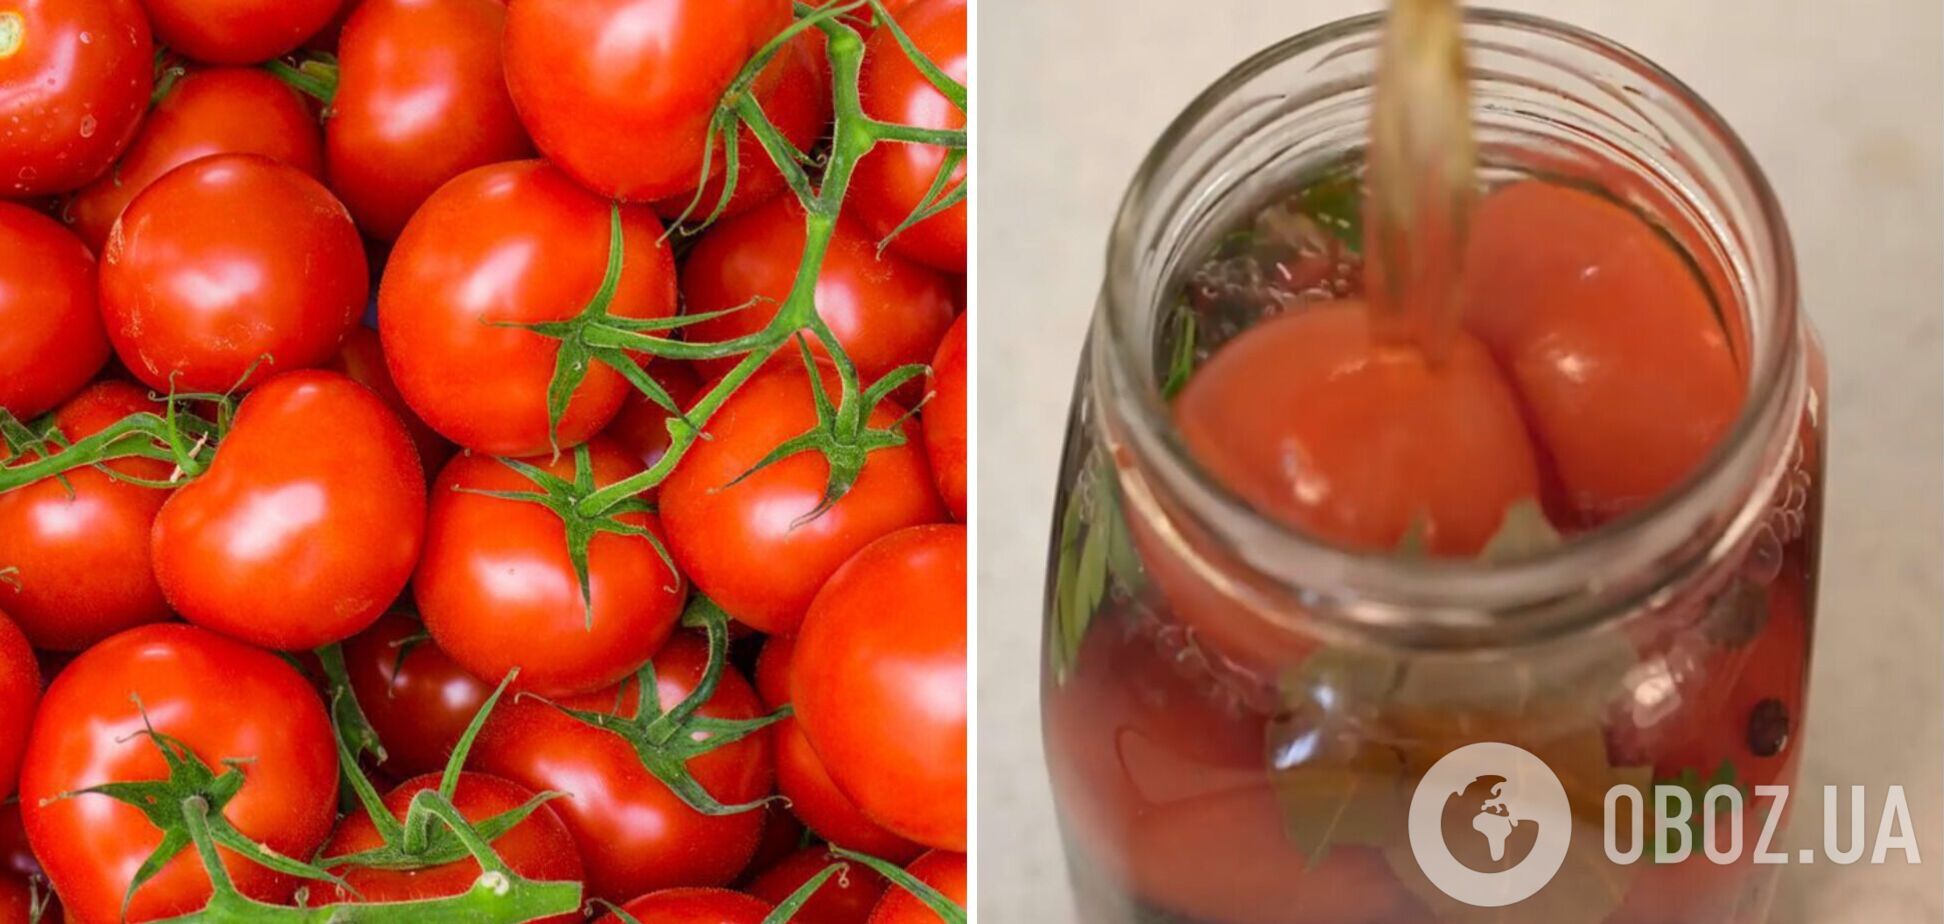 Маринованные помидоры с секретным ингредиентом, усиливающим вкус томатов